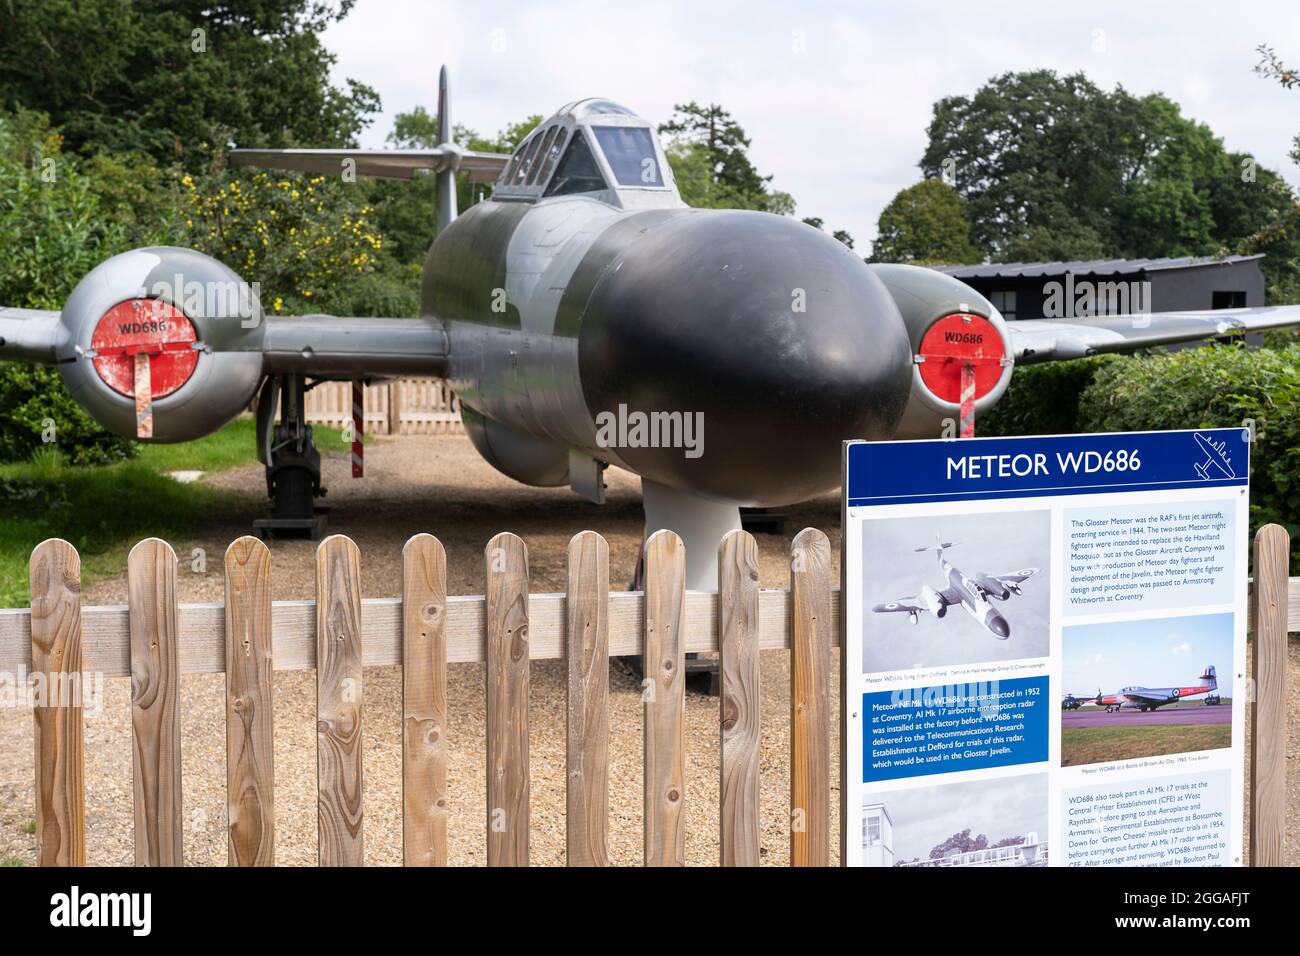 L'ultimo aereo a volare da Defford Airfield è stato il combattente notturno Gloster Meteor NF Mark 11 WD686. L'aereo è raffigurato a Defford Airfield, Regno Unito Foto Stock